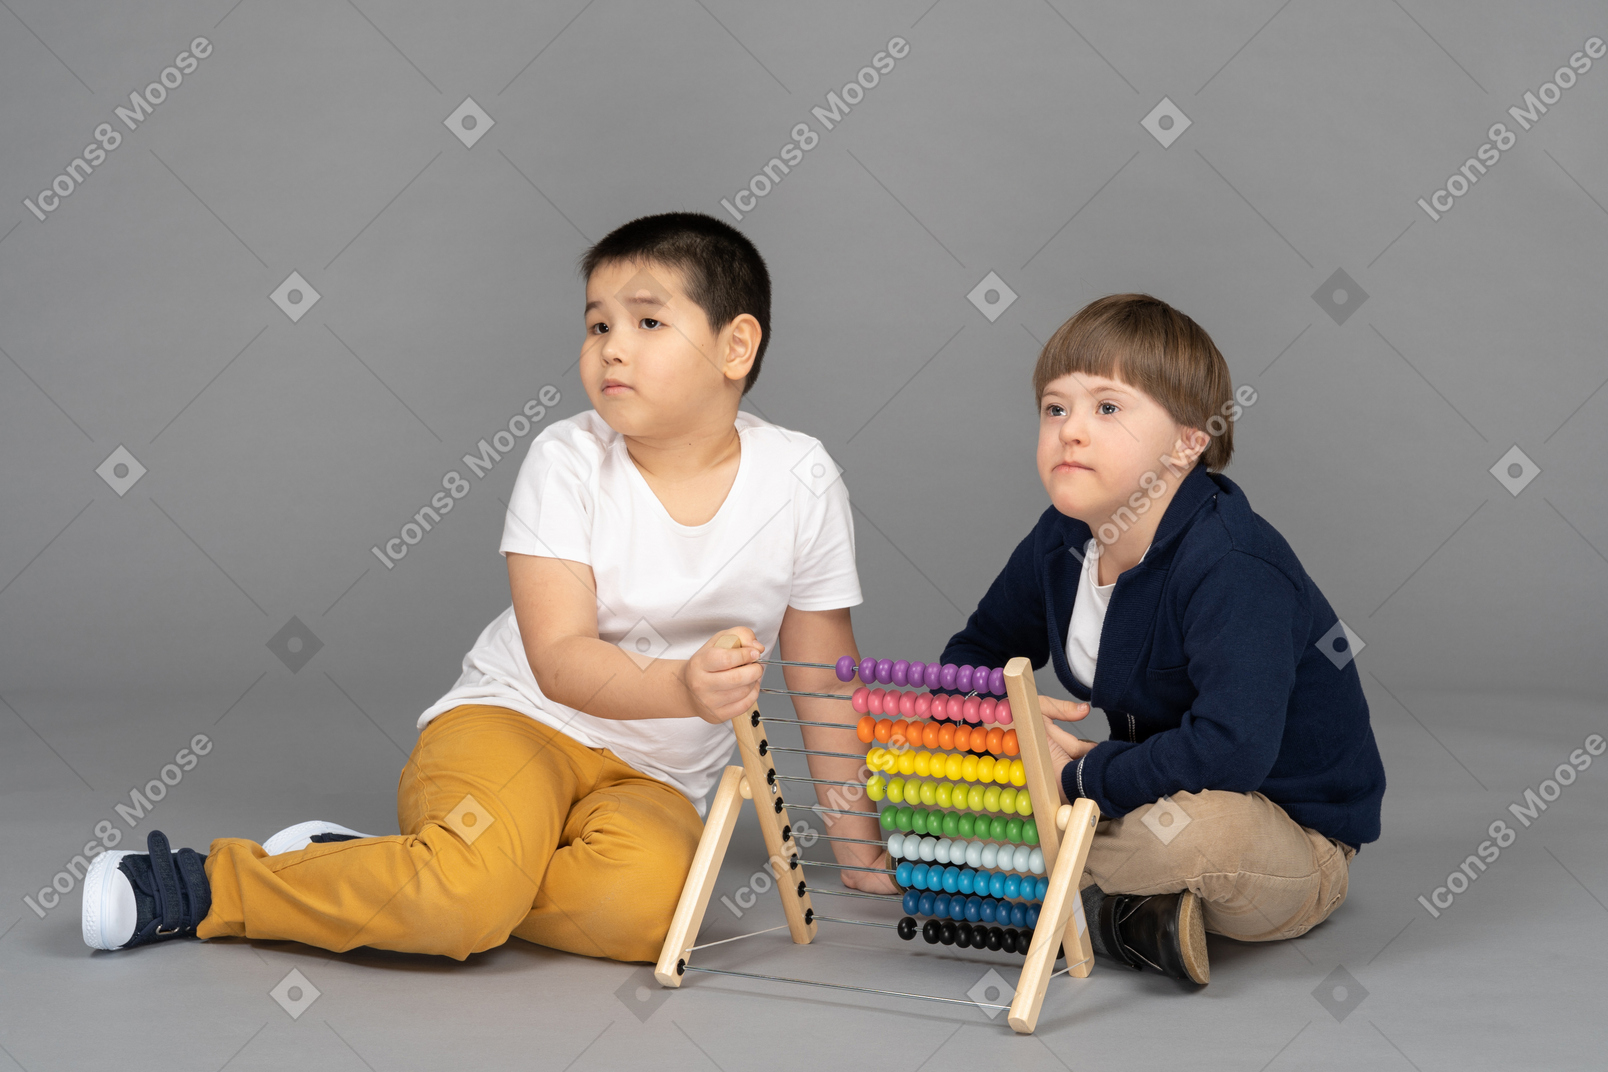 Dos niños mirando de reojo